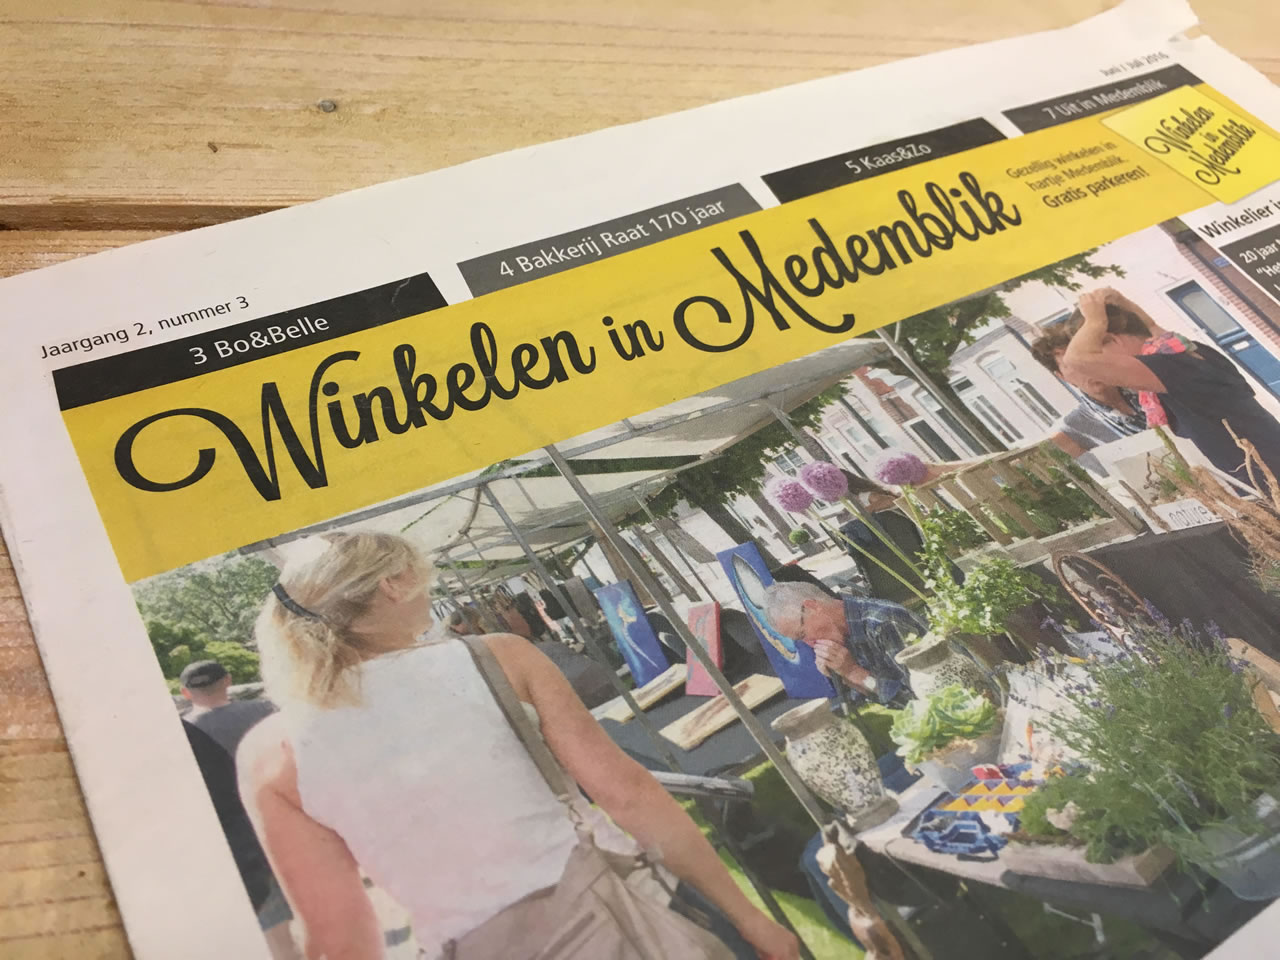 PC Reclame - Winkelen in Medemblik krant juni-juli editie 2016